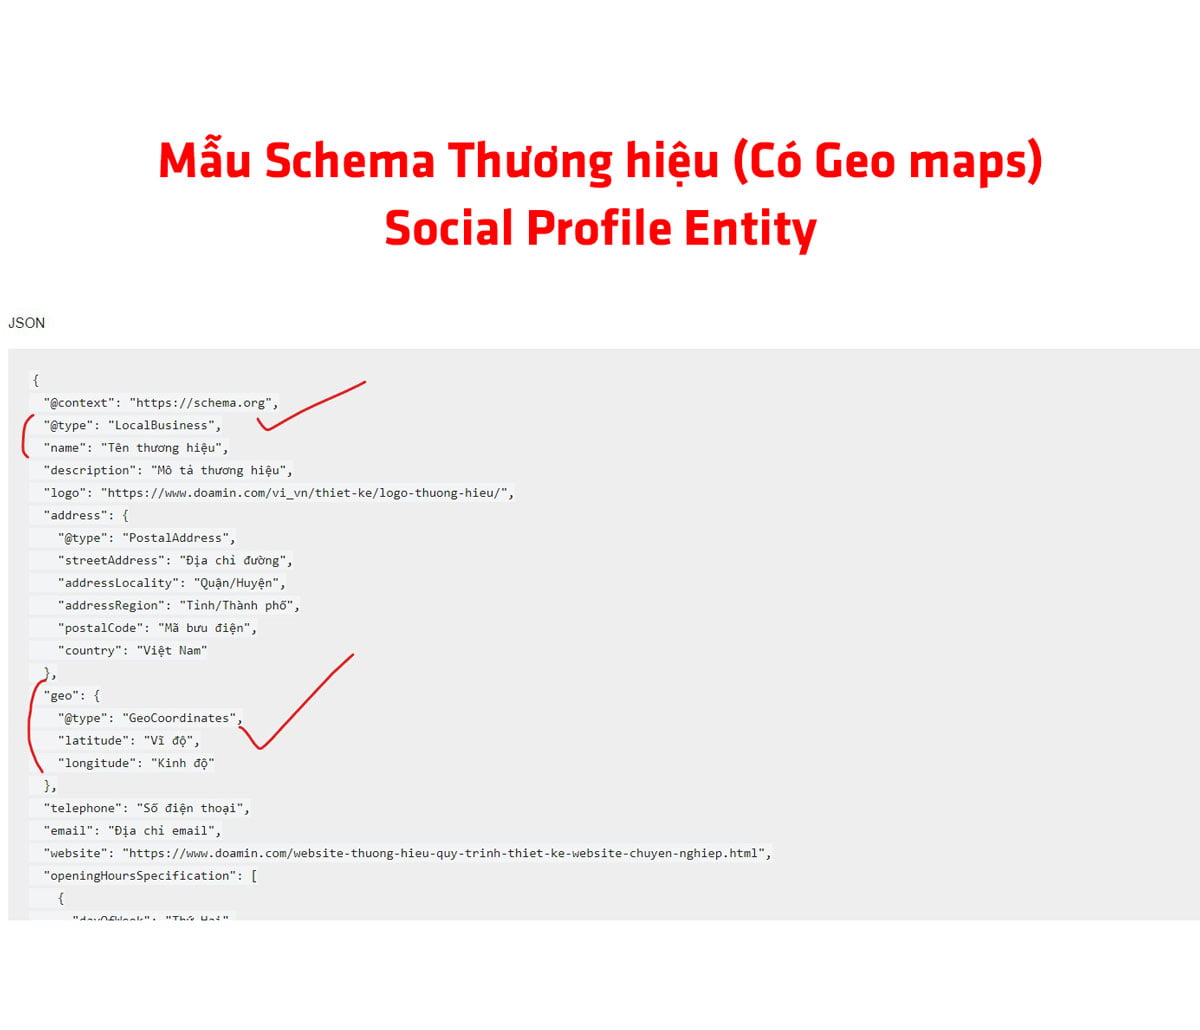 Mẫu Schema Thương hiệu (Có Geo maps) – Social Profile Entity